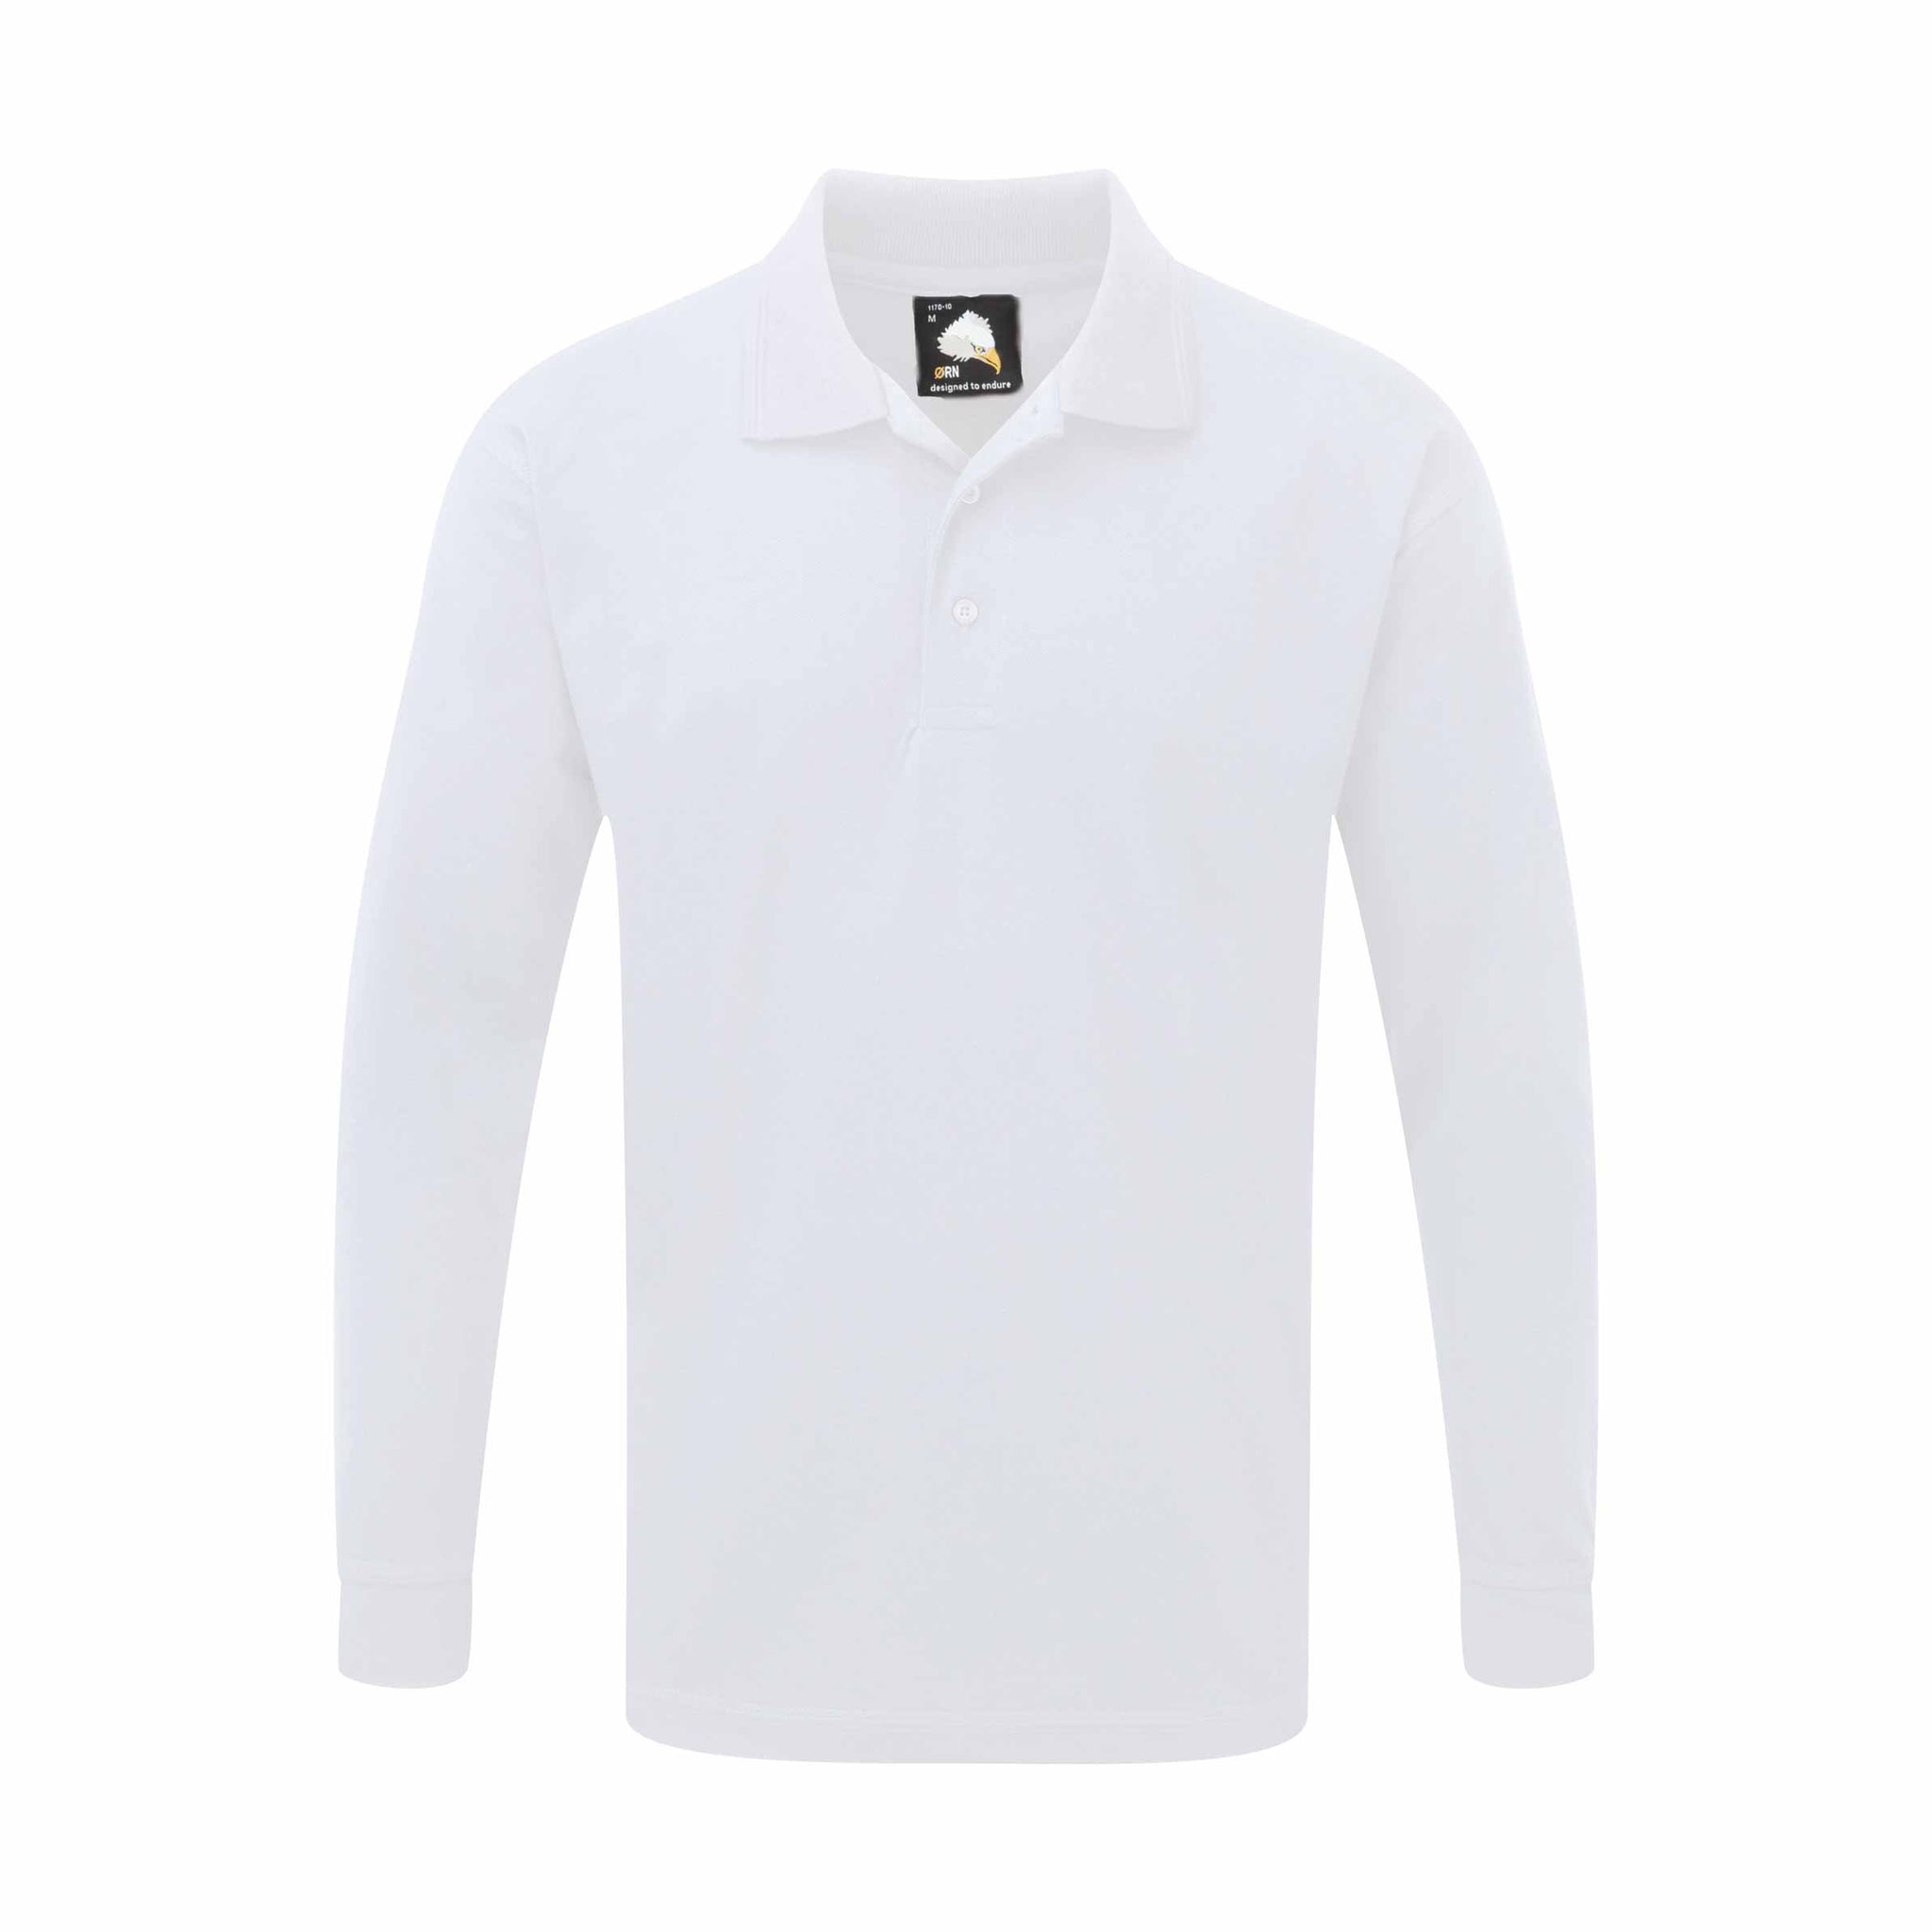 Premium Langarm Poloshirt - Weaver / XS-5XL / 50% Polyester - 50% Baumwolle / 8 Farben